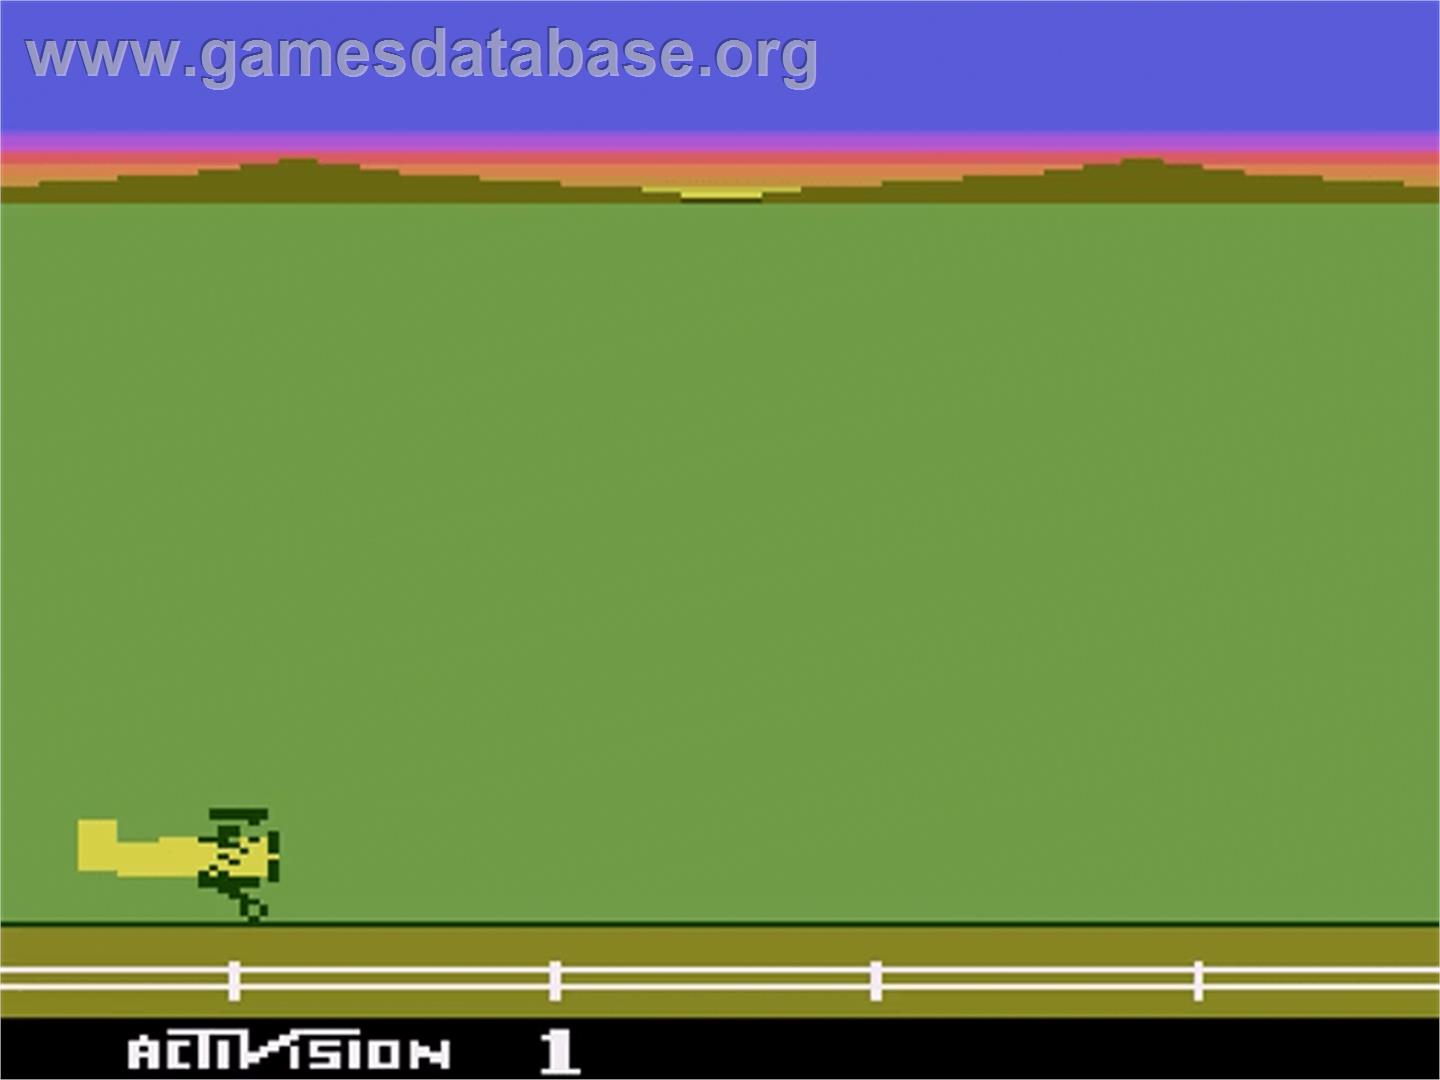 Barnstorming - Atari 2600 - Artwork - Title Screen